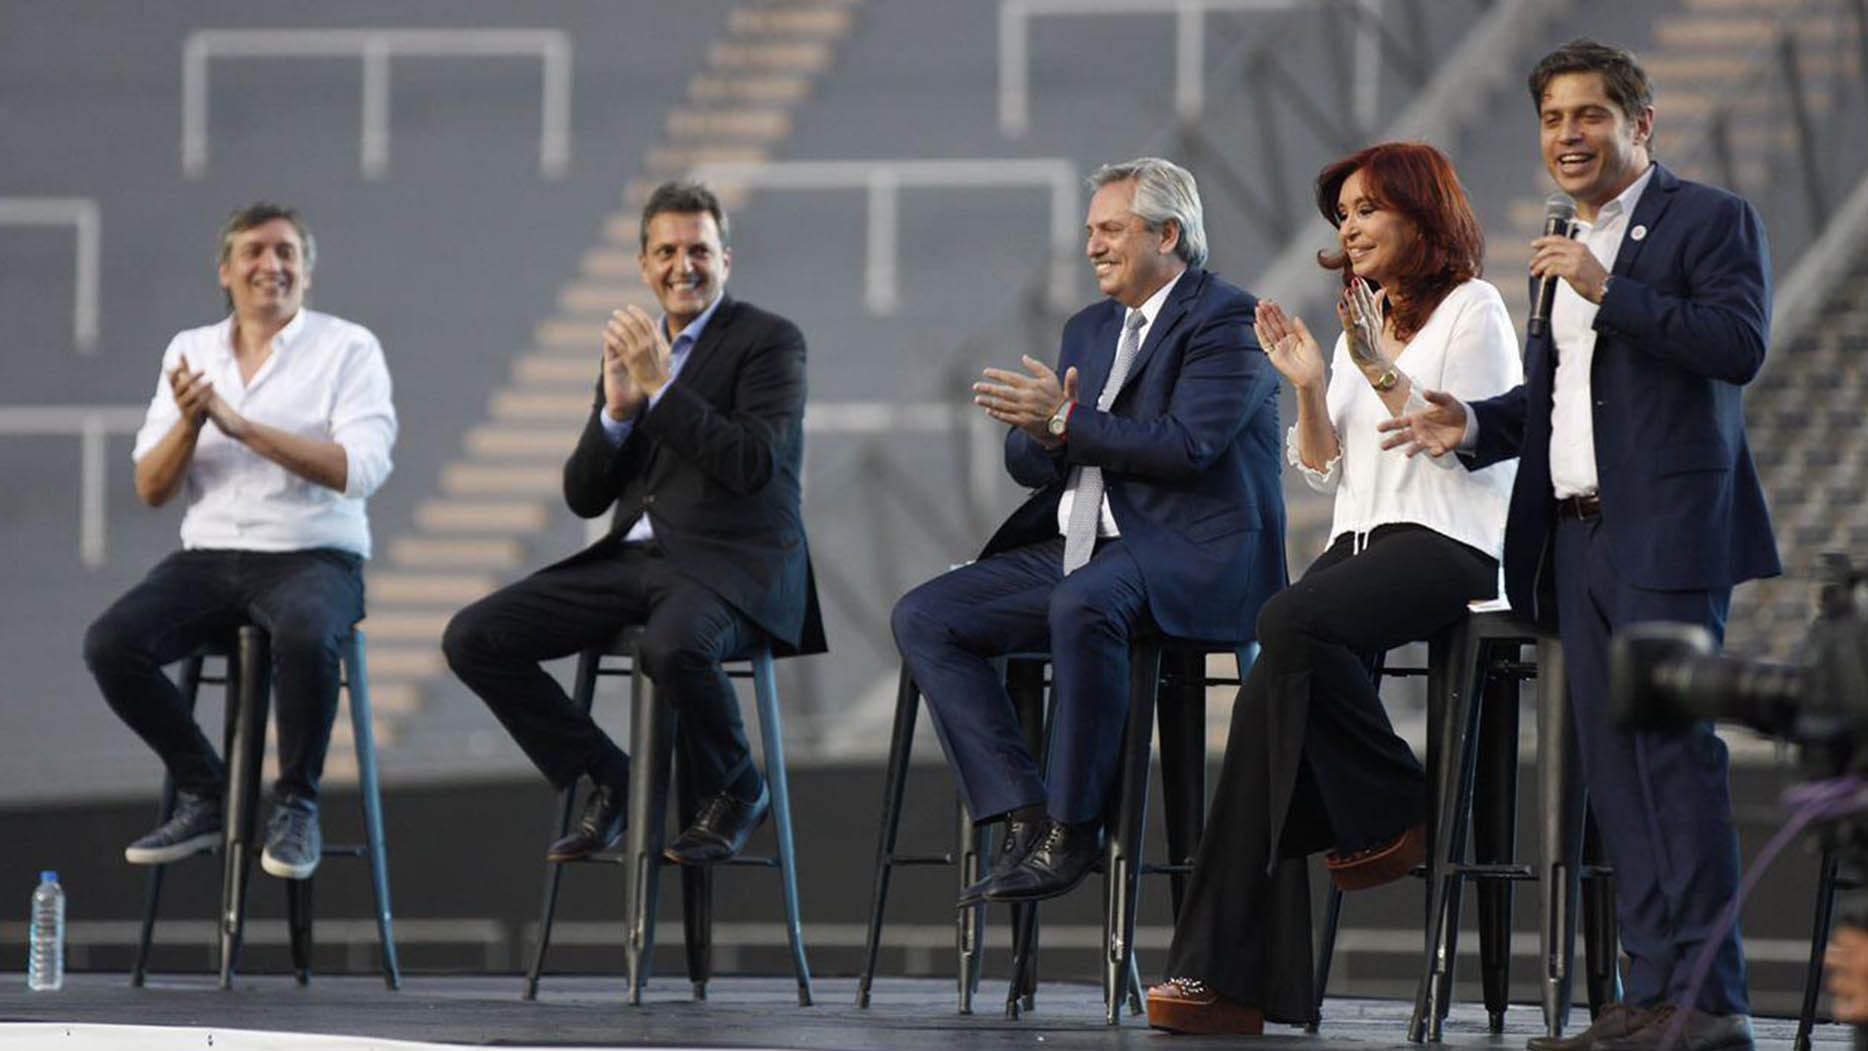 Alberto Fernández y Cristina Kirchner comparten un acto en La Plata junto a Axel Kicillof y Sergio Massa